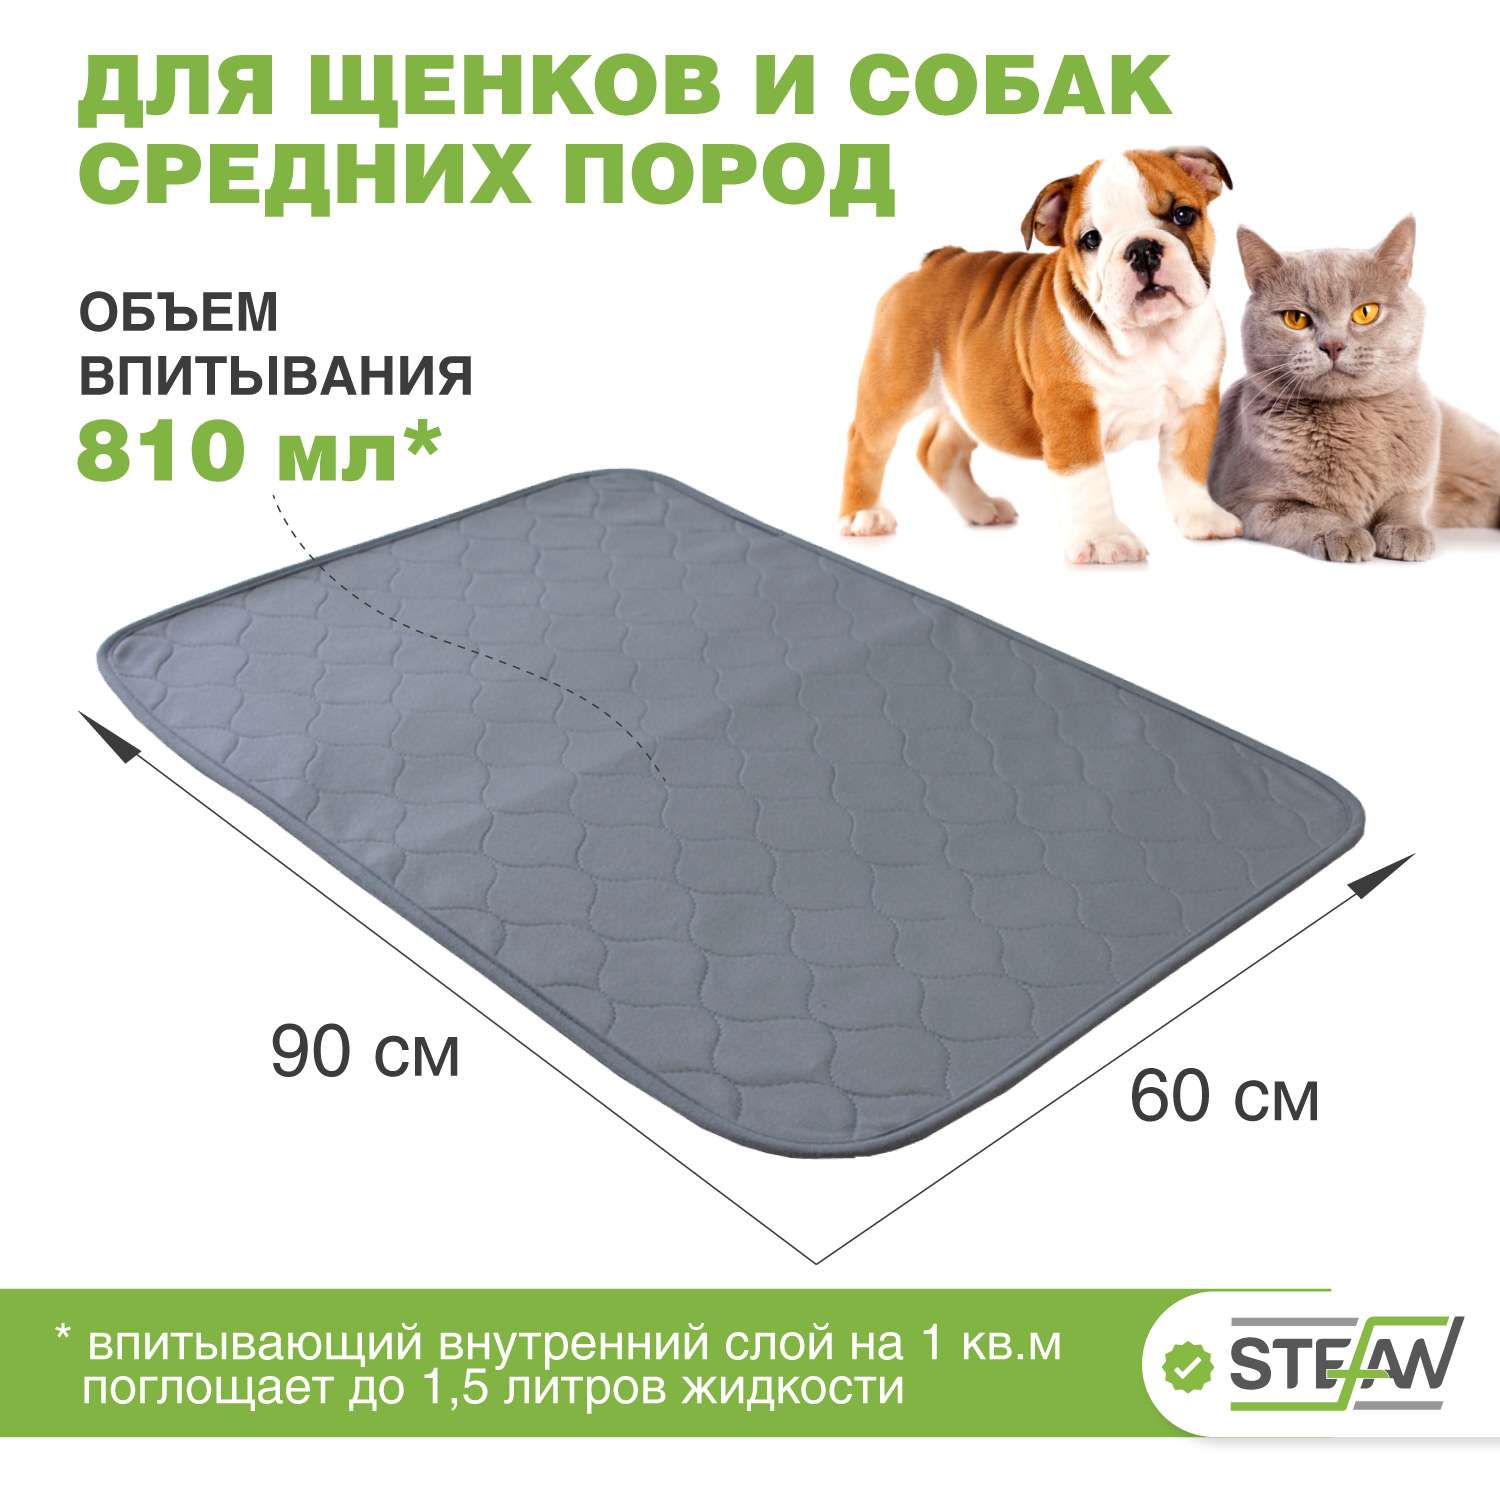 Пеленка для животных Stefan впитывающая многоразовая серая 60х90 см - фото 2